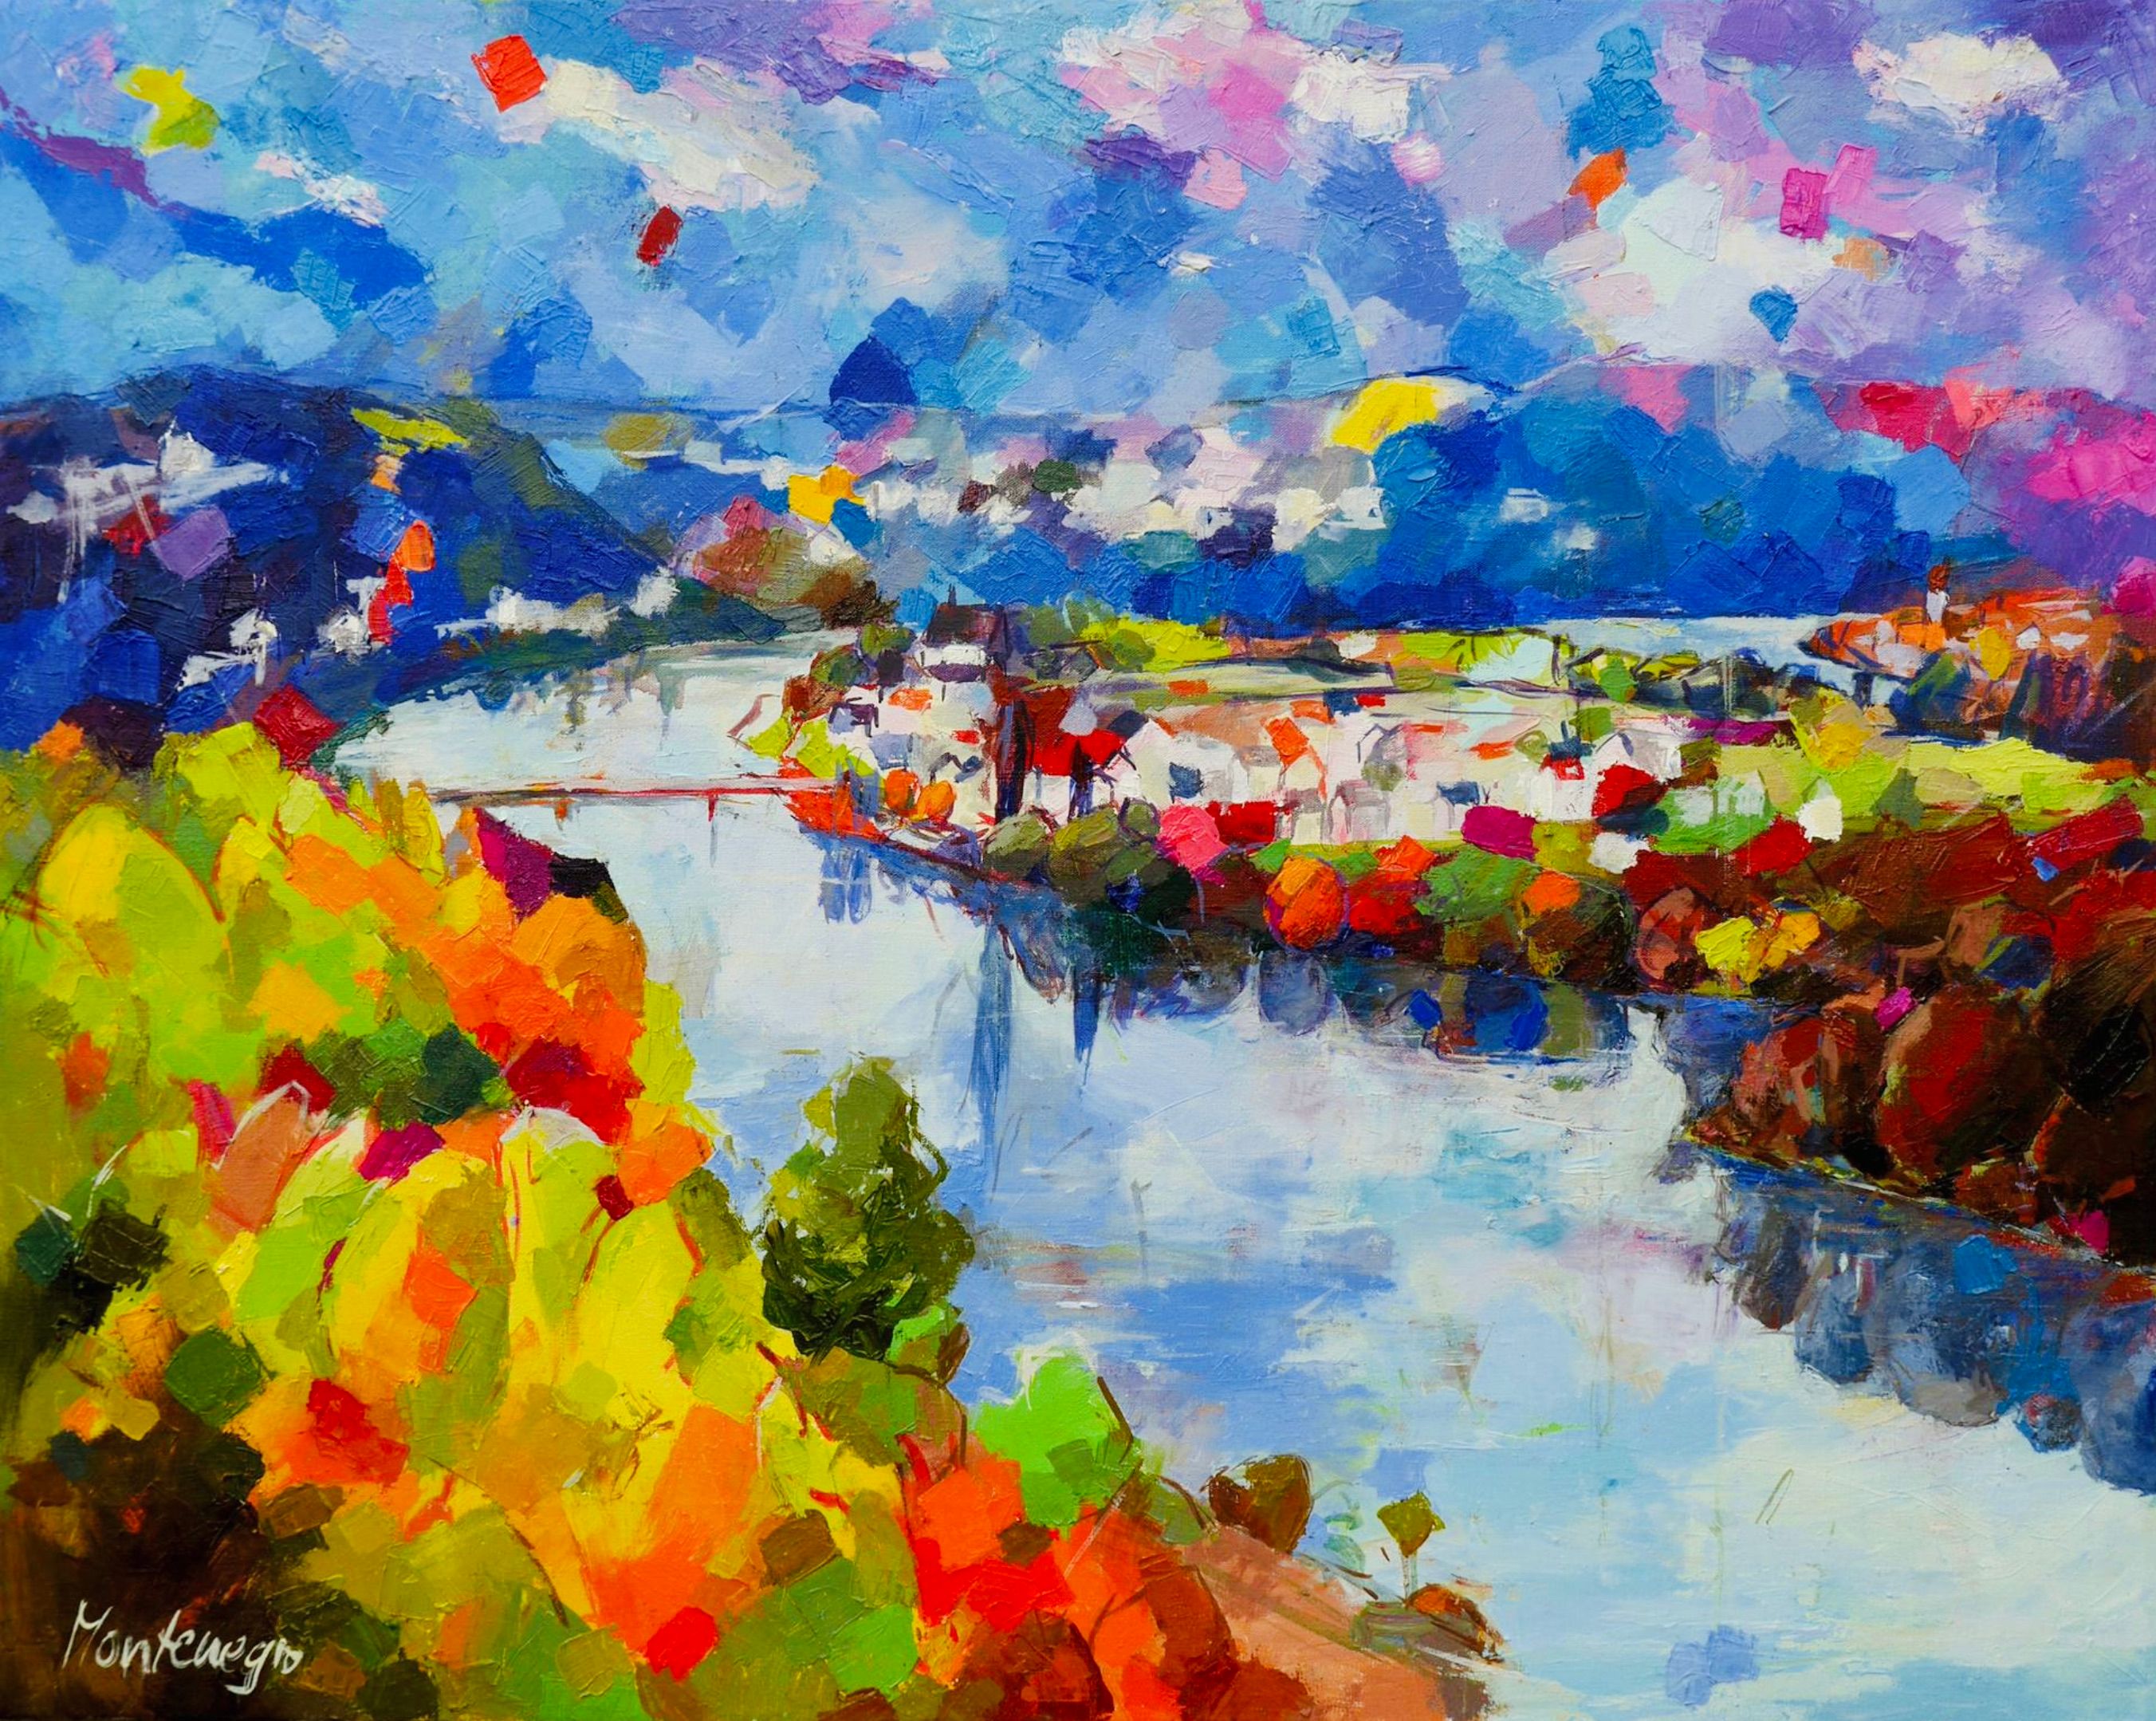 Miriam Montenegro peinture impressionniste Paysage avec rivière bleue entourée de feuillus